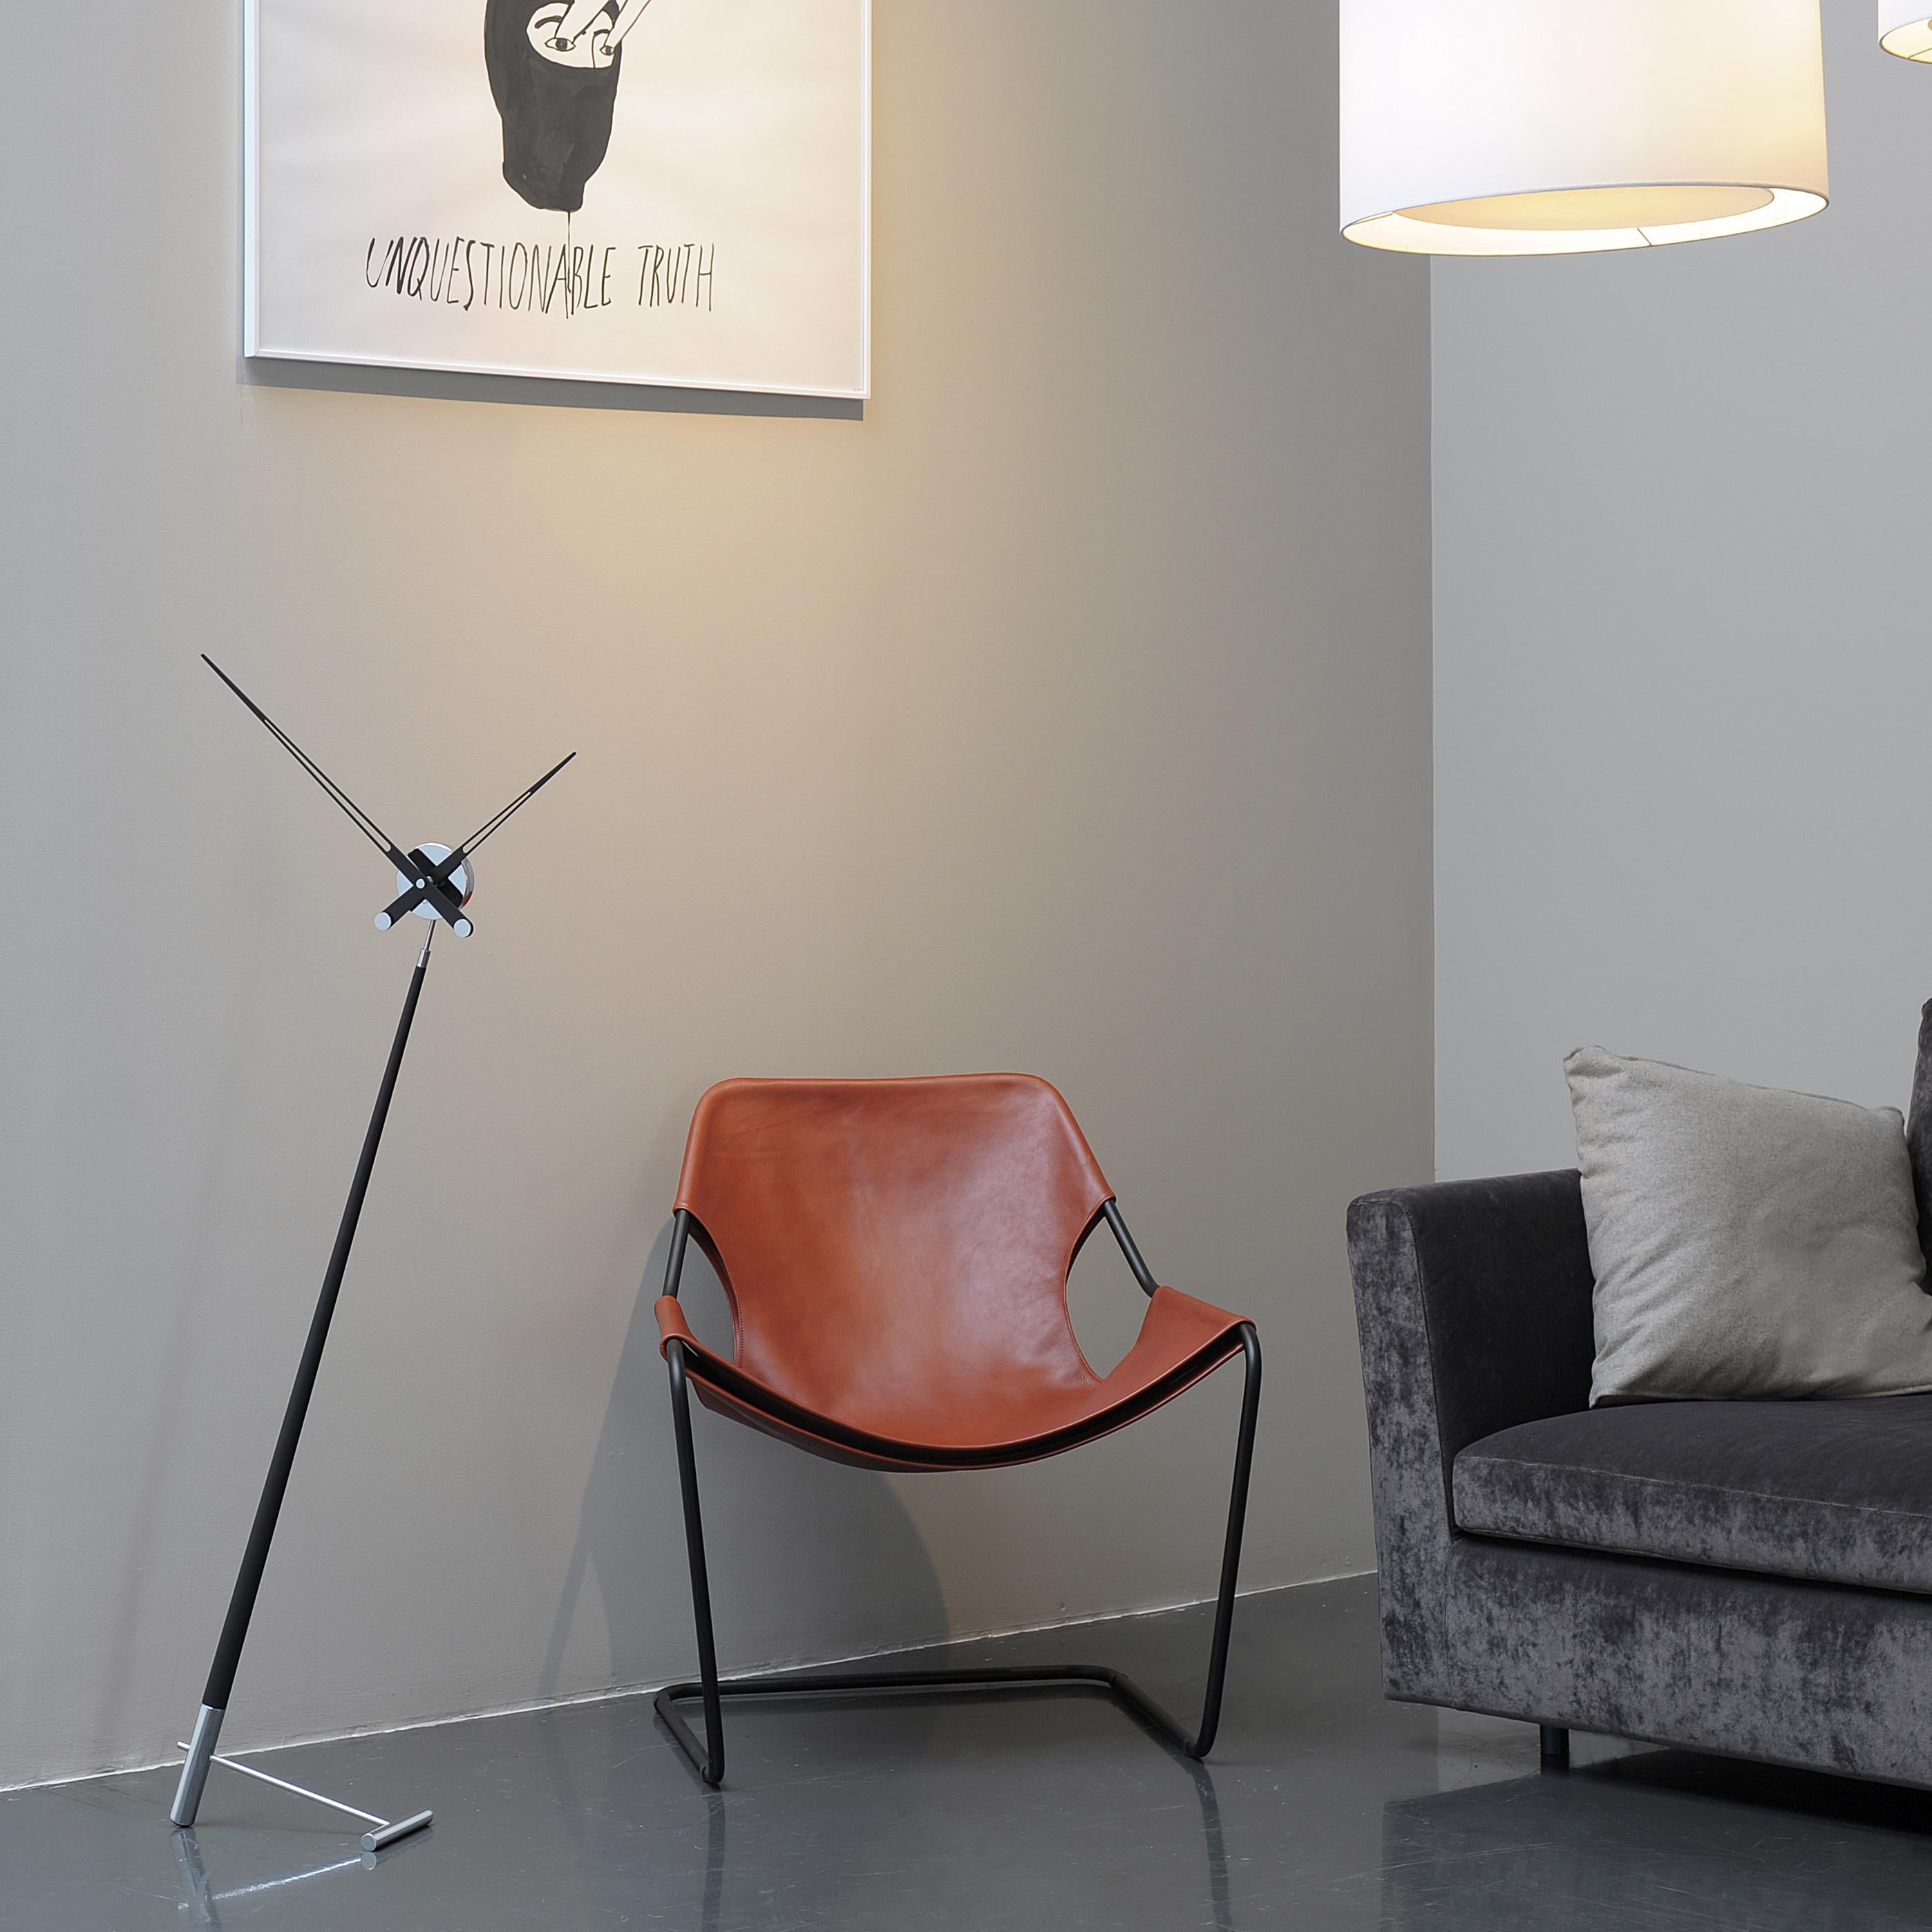 En innovant avec ses modèles petits et simples, Nomon propose l'horloge Pisa T à placer sur les bureaux ou les bureaux d'angle. La forme d'aiguille fine de cette horloge à pied offre un style simple et confortable pour votre maison.

Les mains se